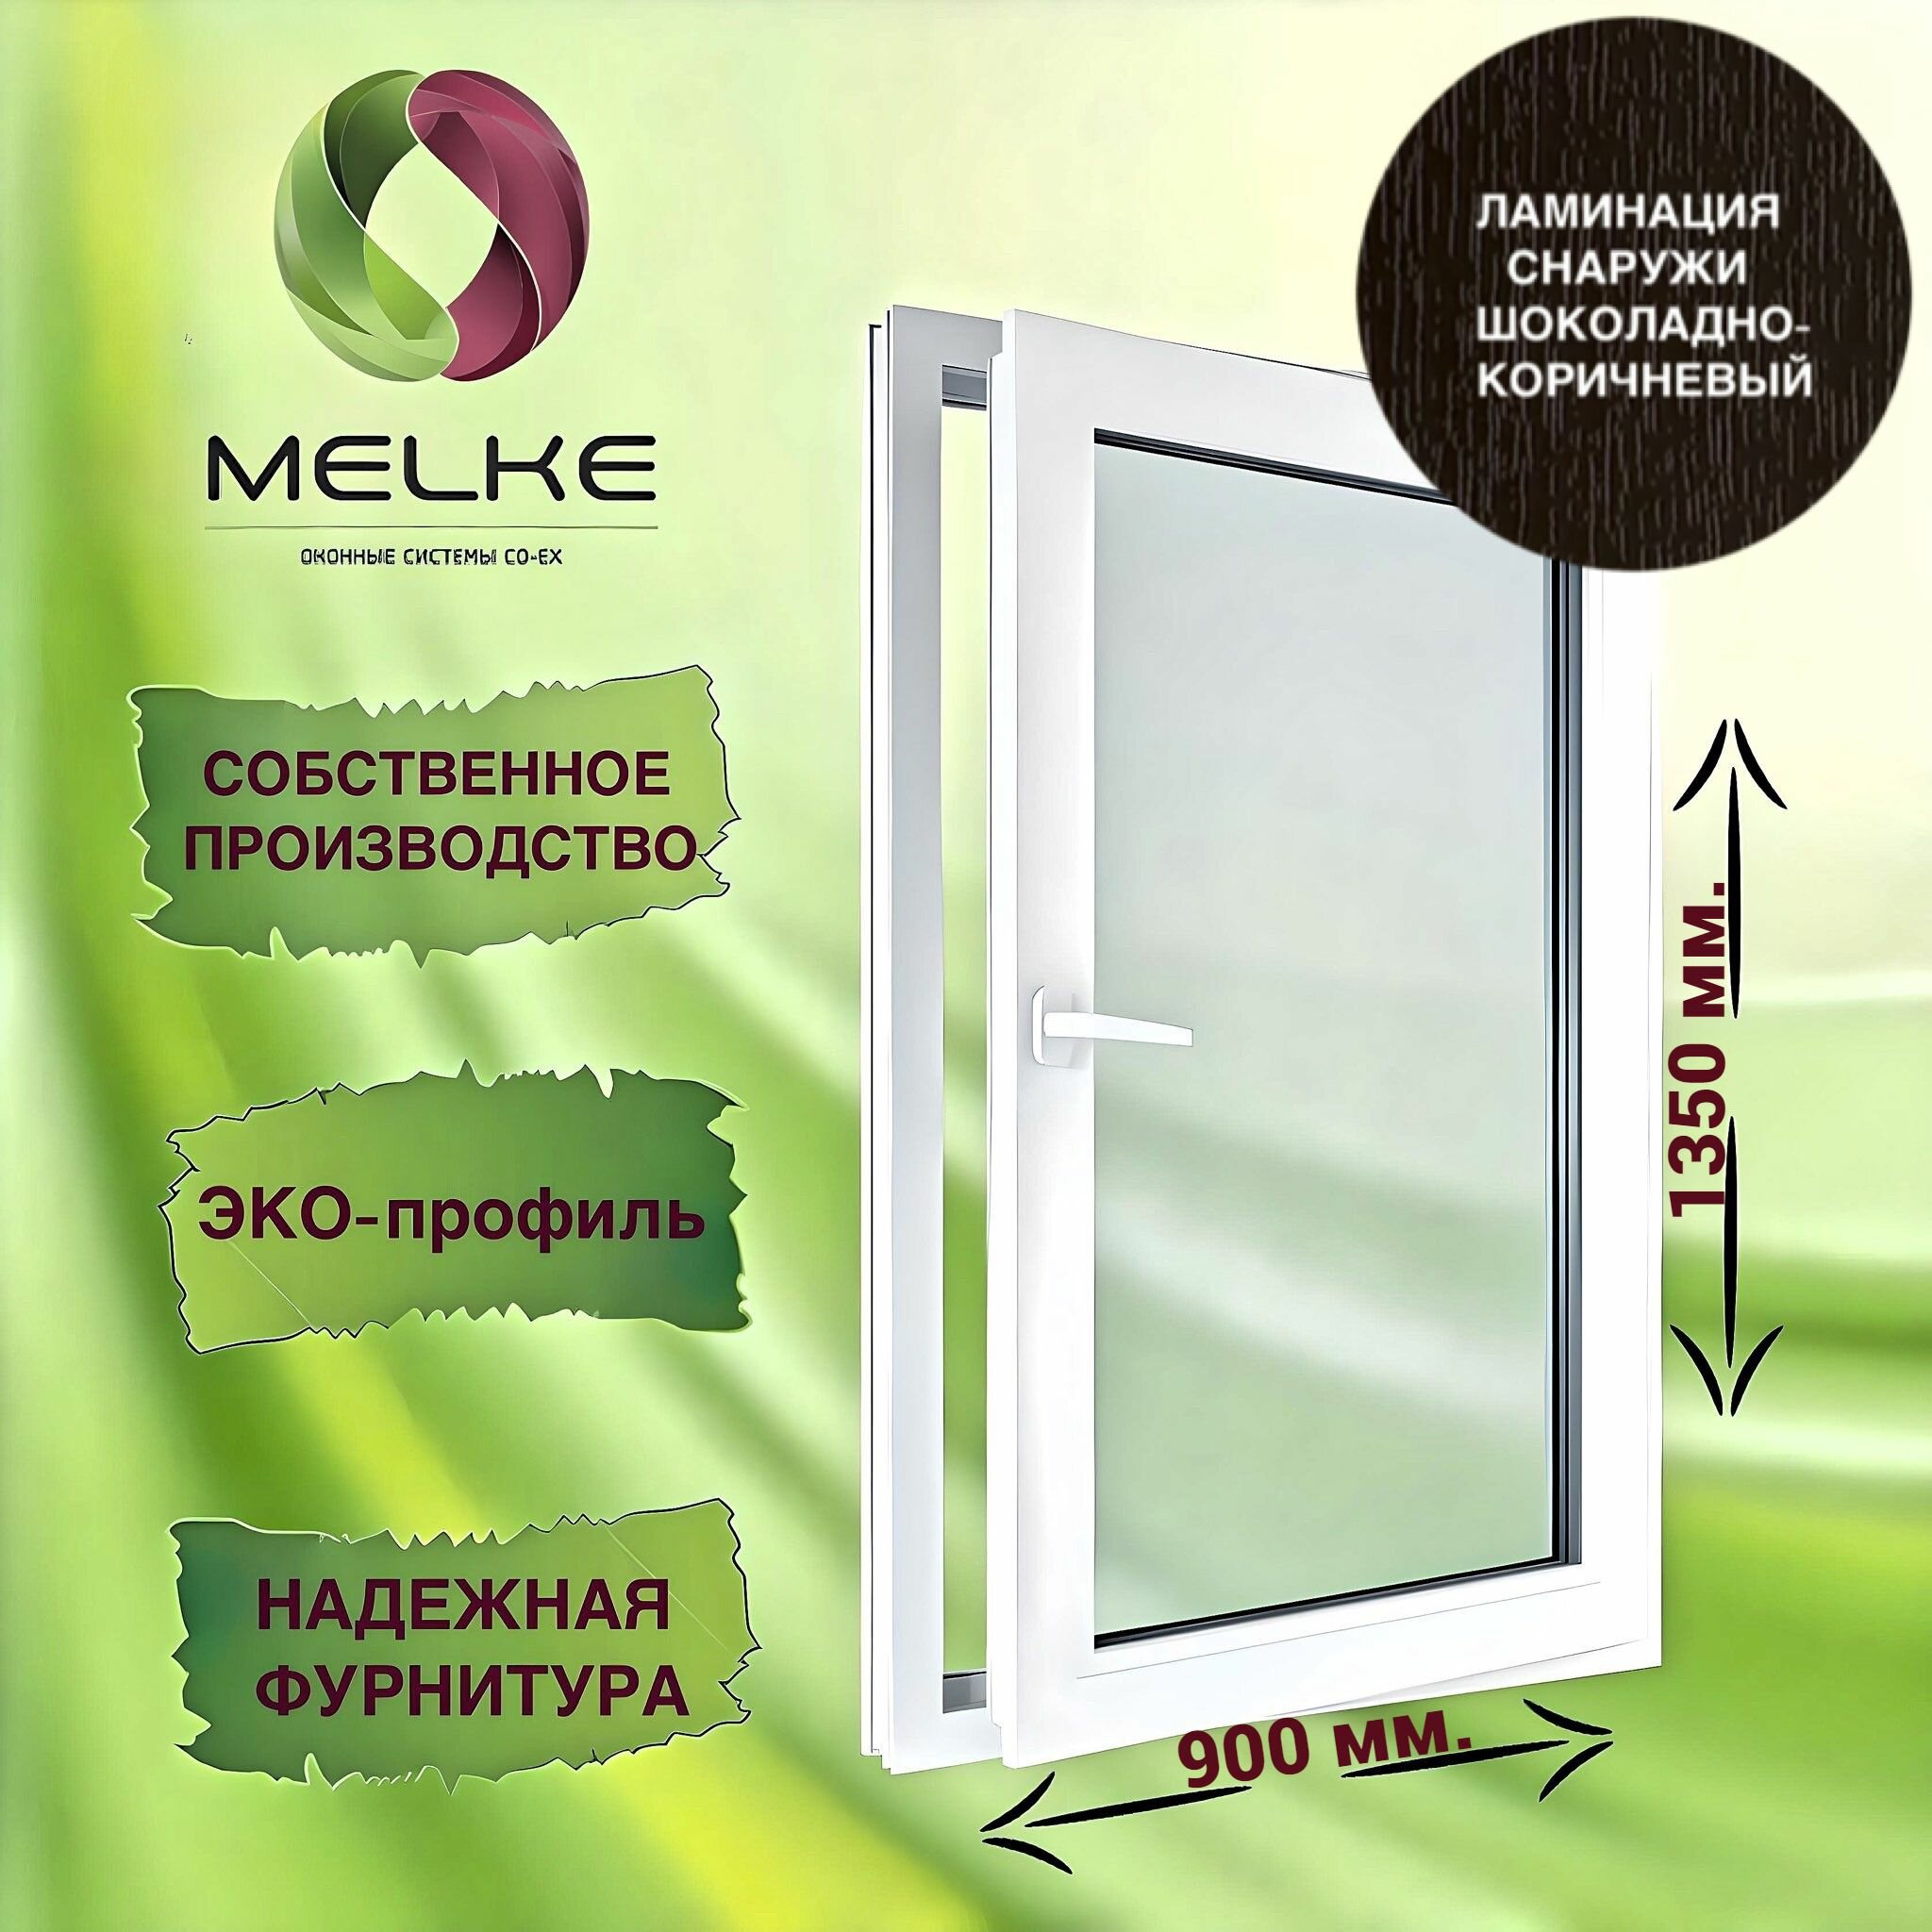 Окно 1350 х 900 мм, Melke 60 (Фурнитура FUTURUSS), правое одностворчатое, поворотно-откидное, цвет внешней ламинации Шоколадно-коричневый, 2-х камерный стеклопакет, 3 стекла